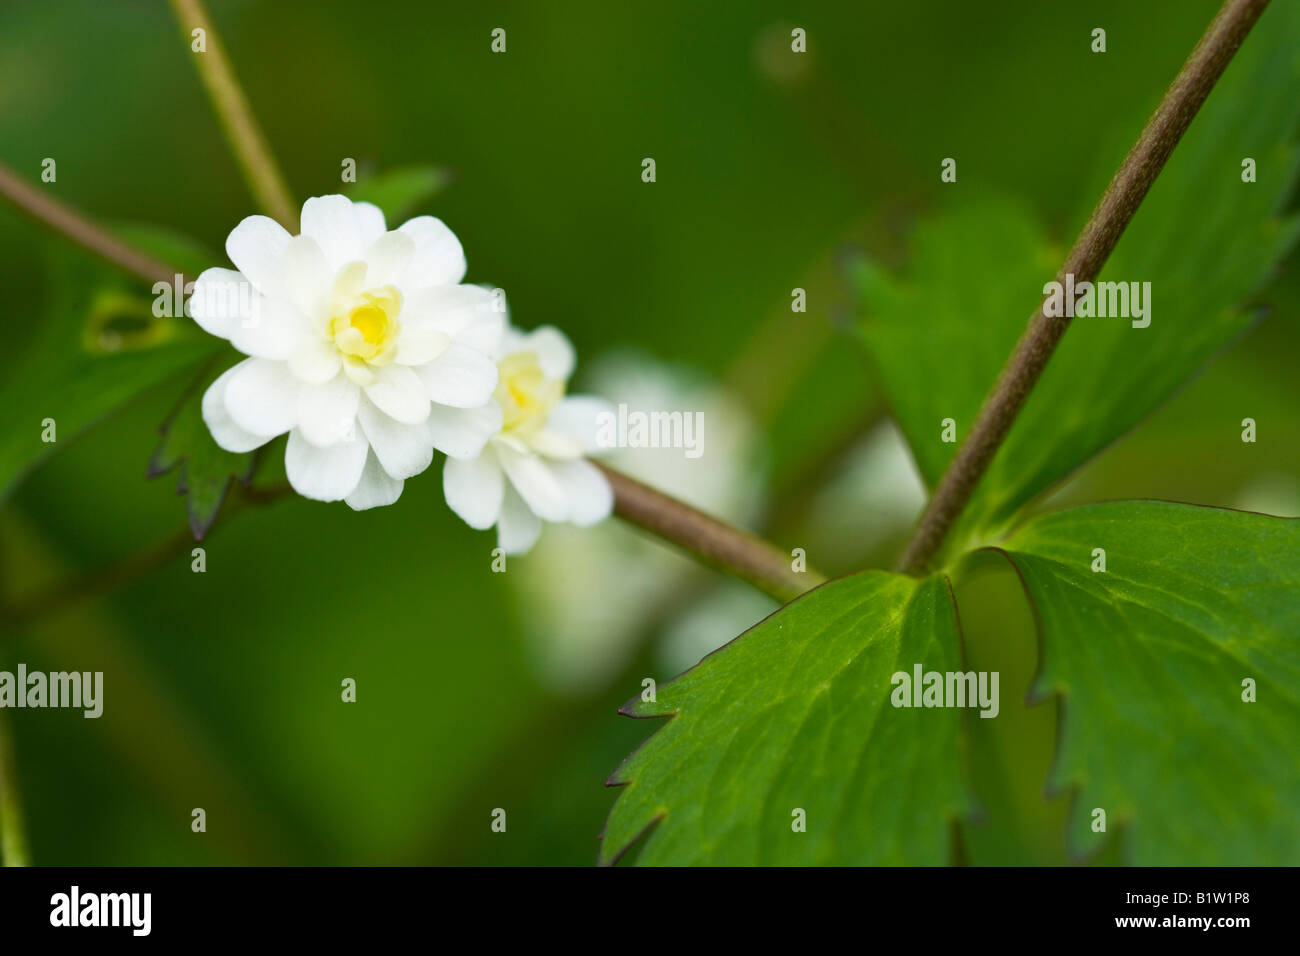 Ranunculus aconitifolius 'Flore pleno' Stock Photo